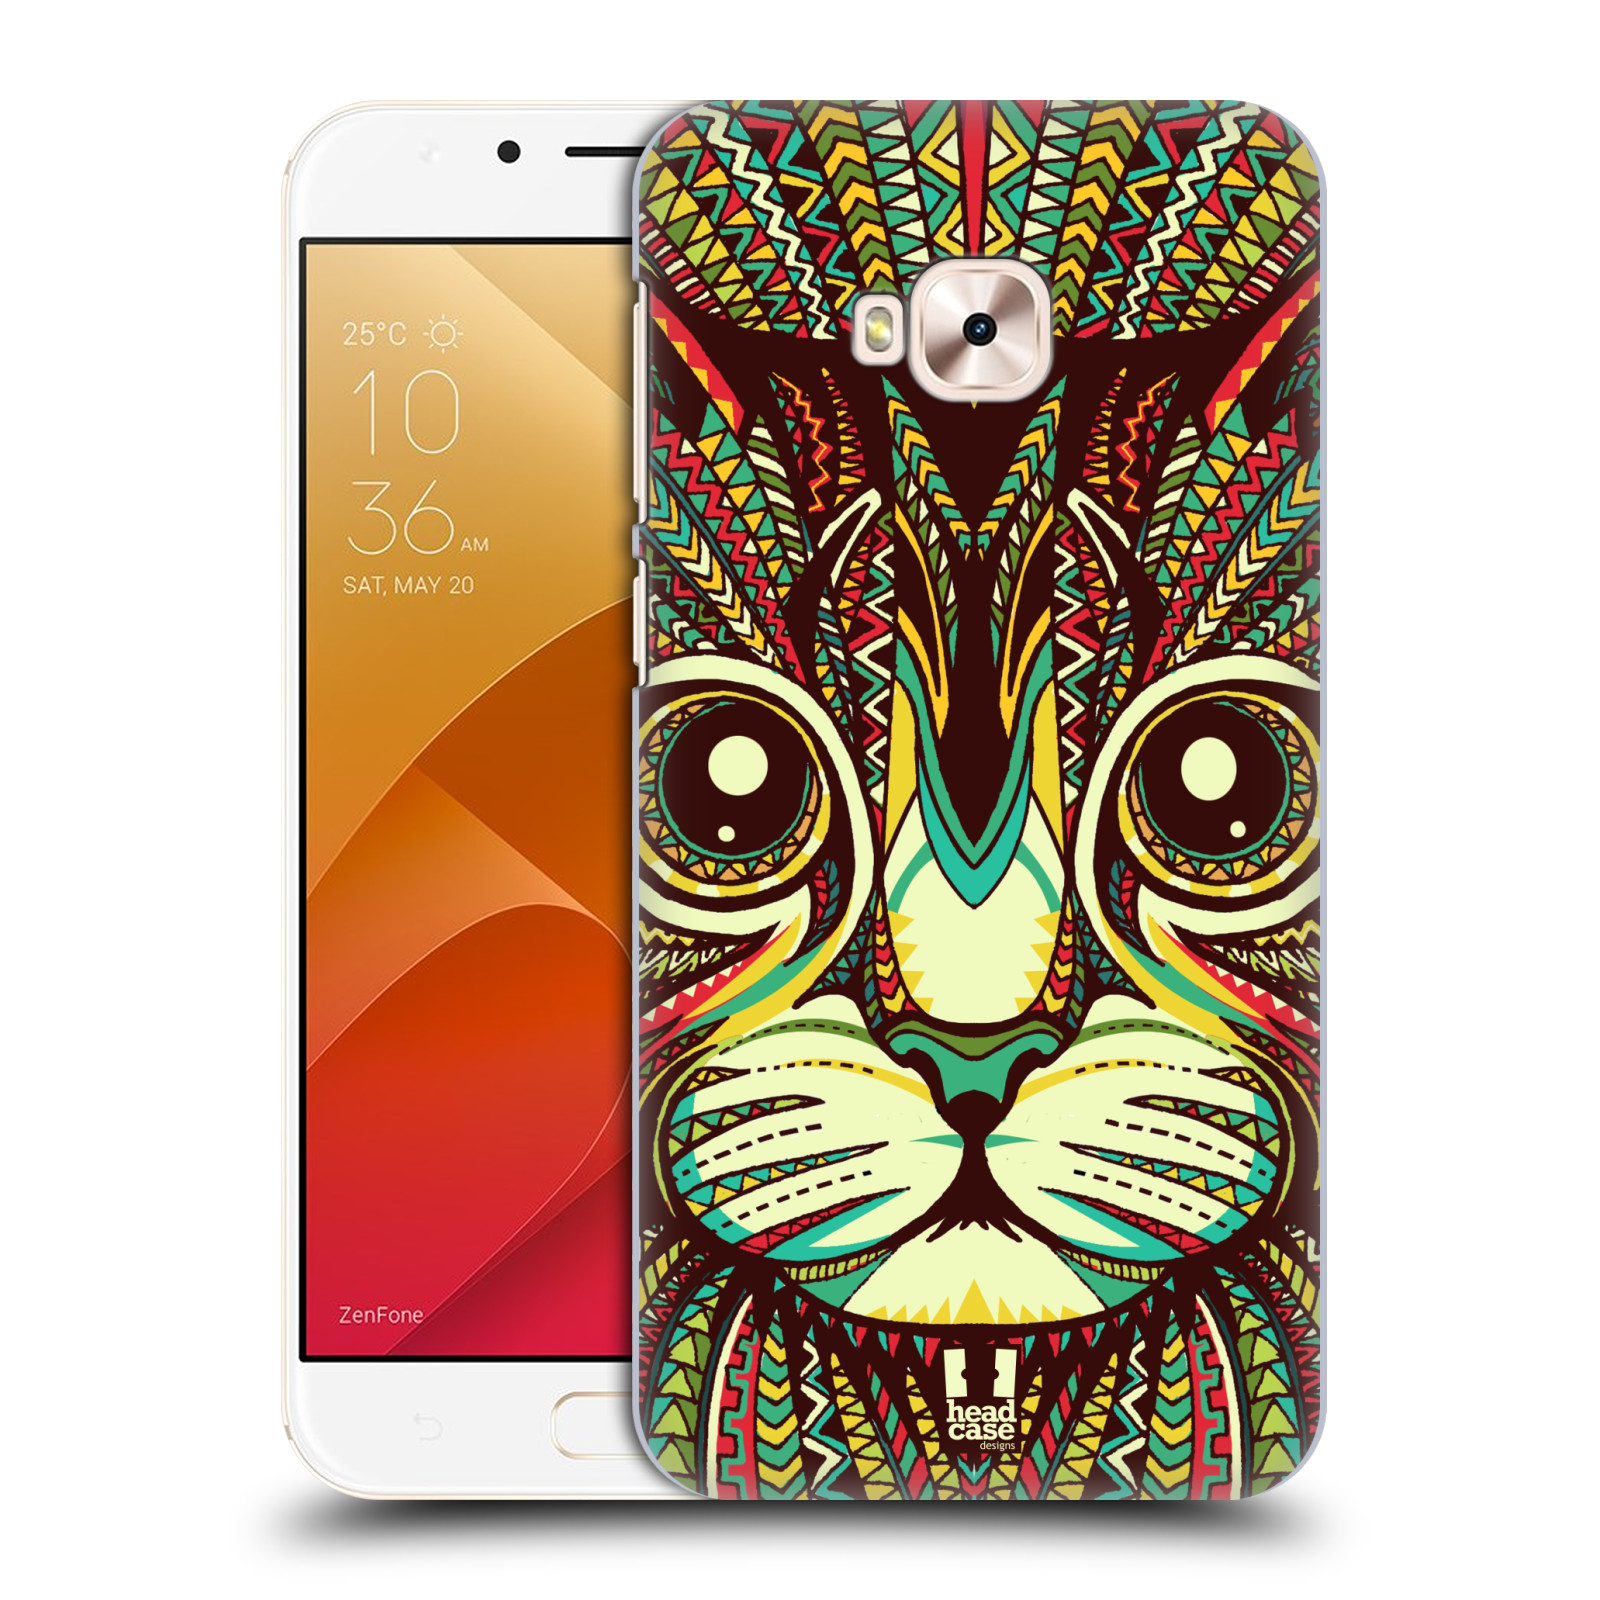 HEAD CASE plastový obal na mobil Asus Zenfone 4 Selfie Pro ZD552KL vzor Aztécký motiv zvíře 2 kotě